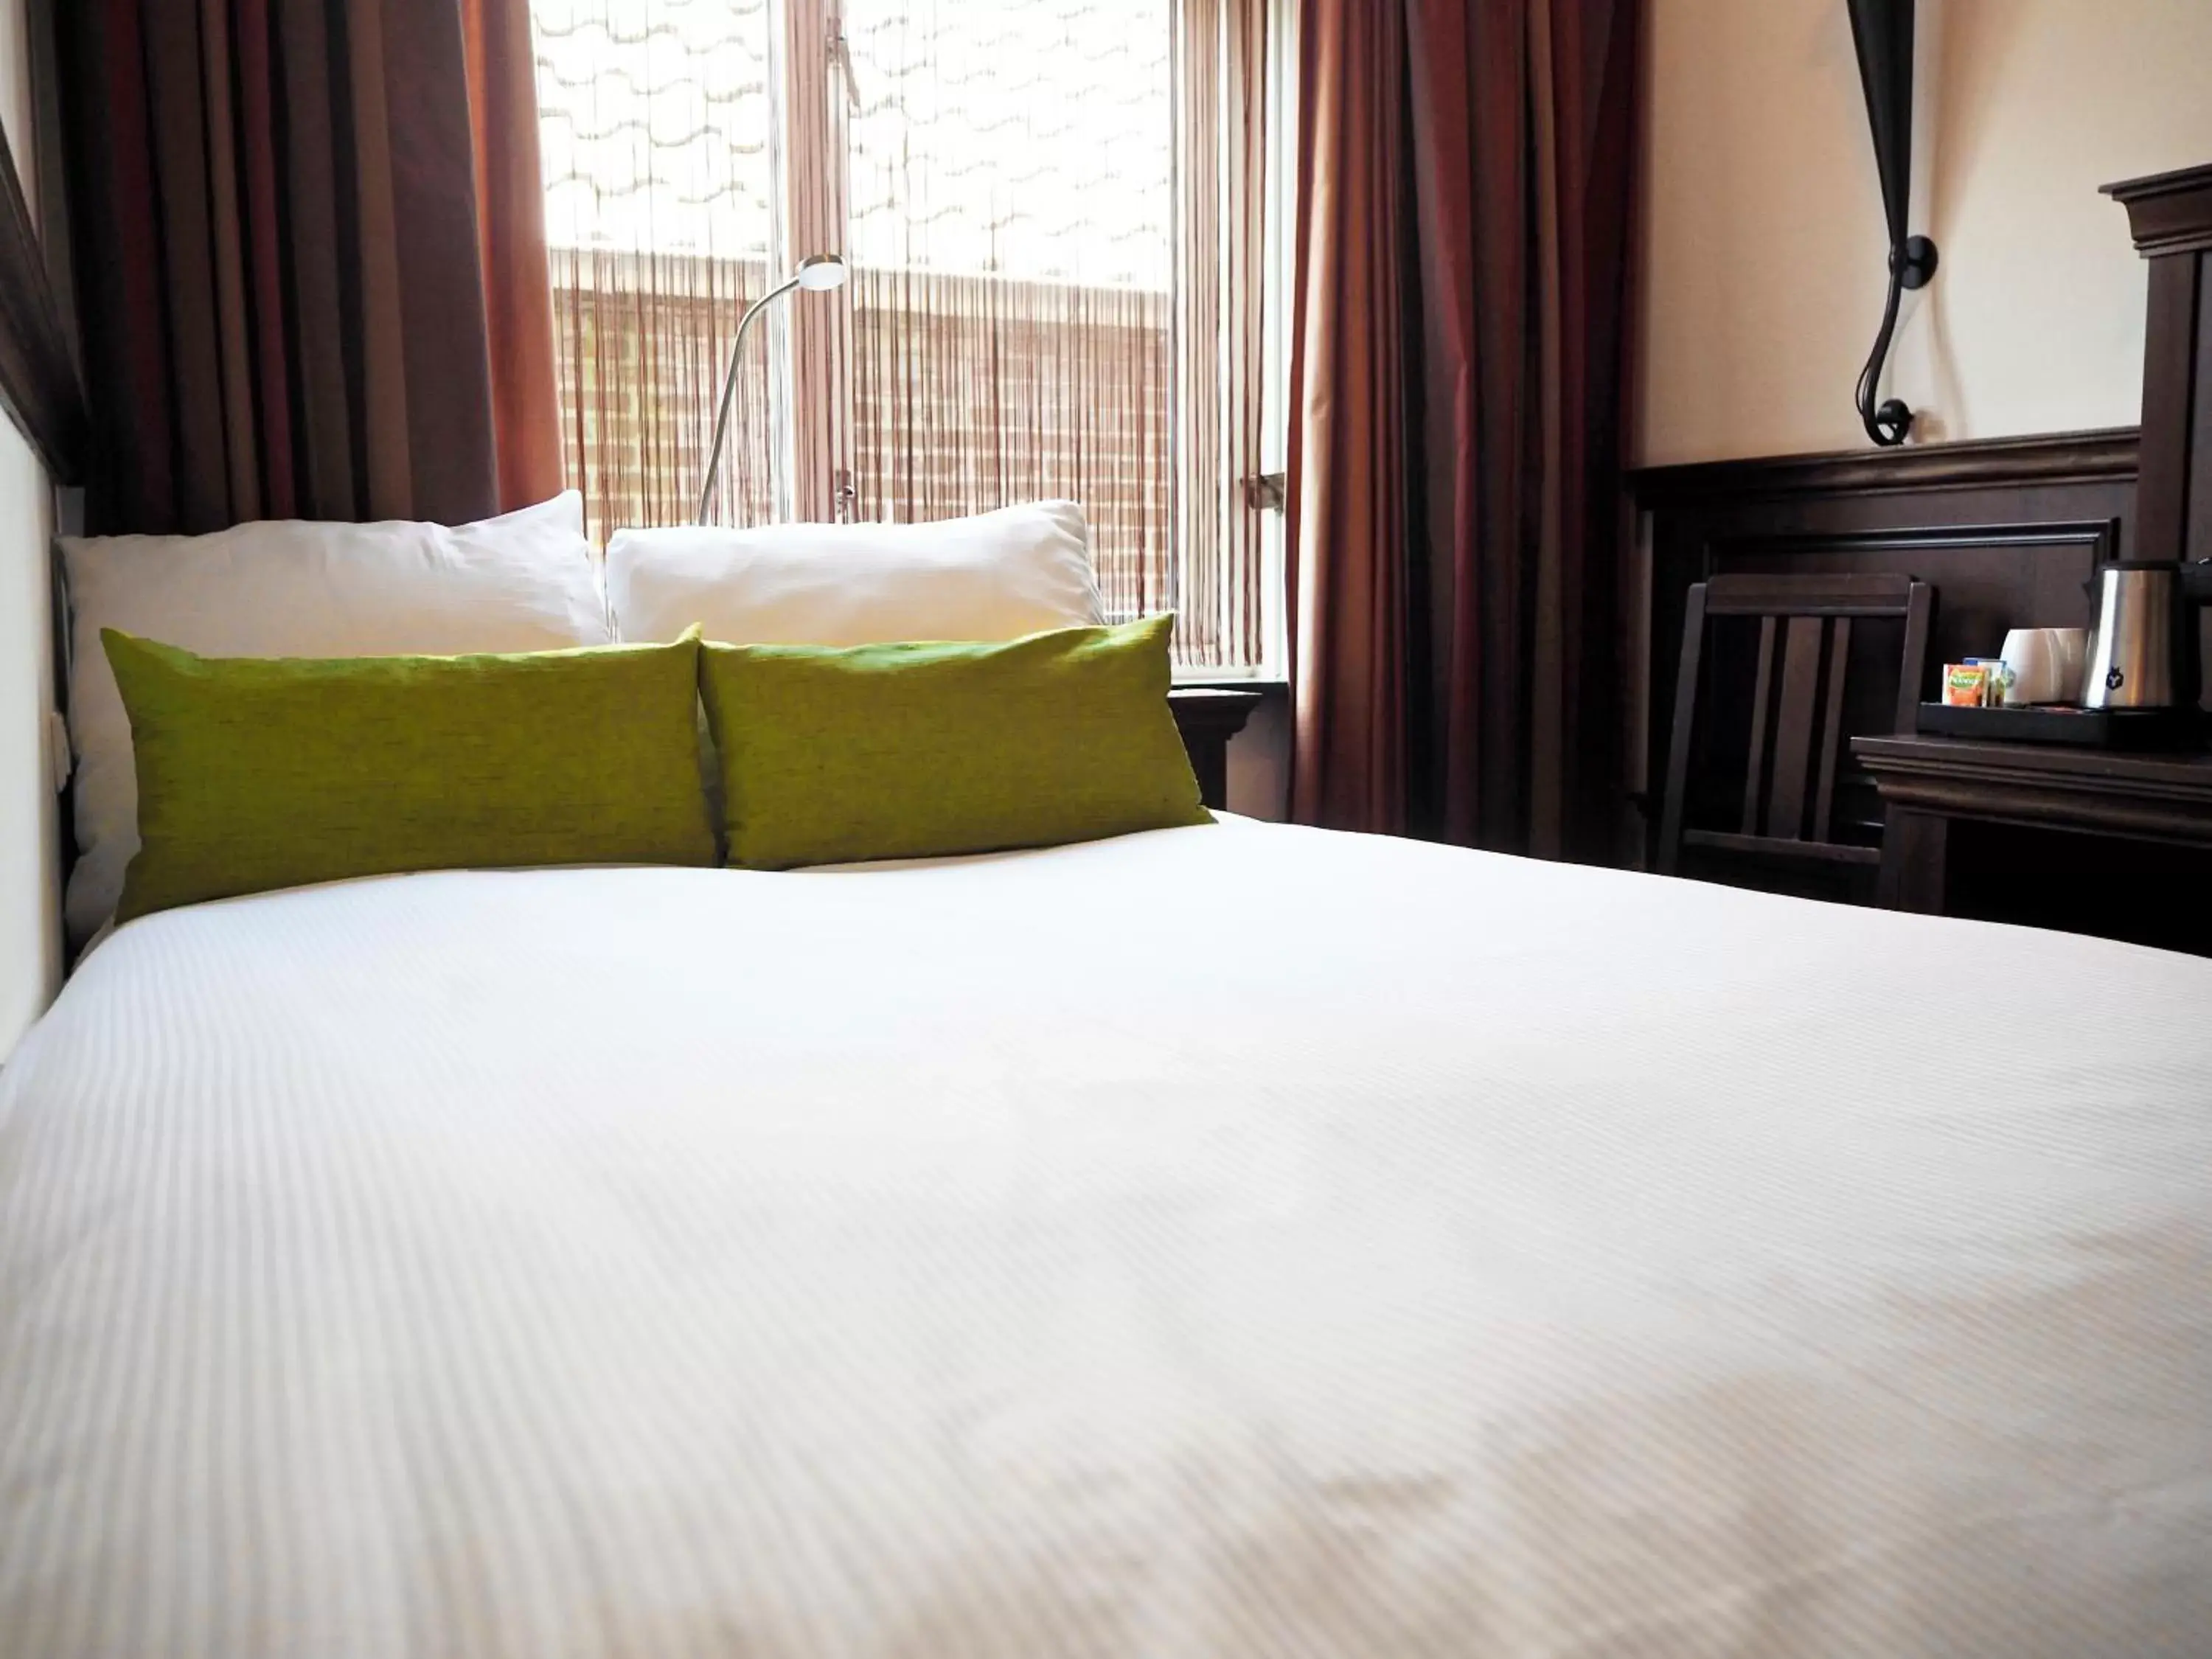 Bed in Hotel Abdij de Westerburcht